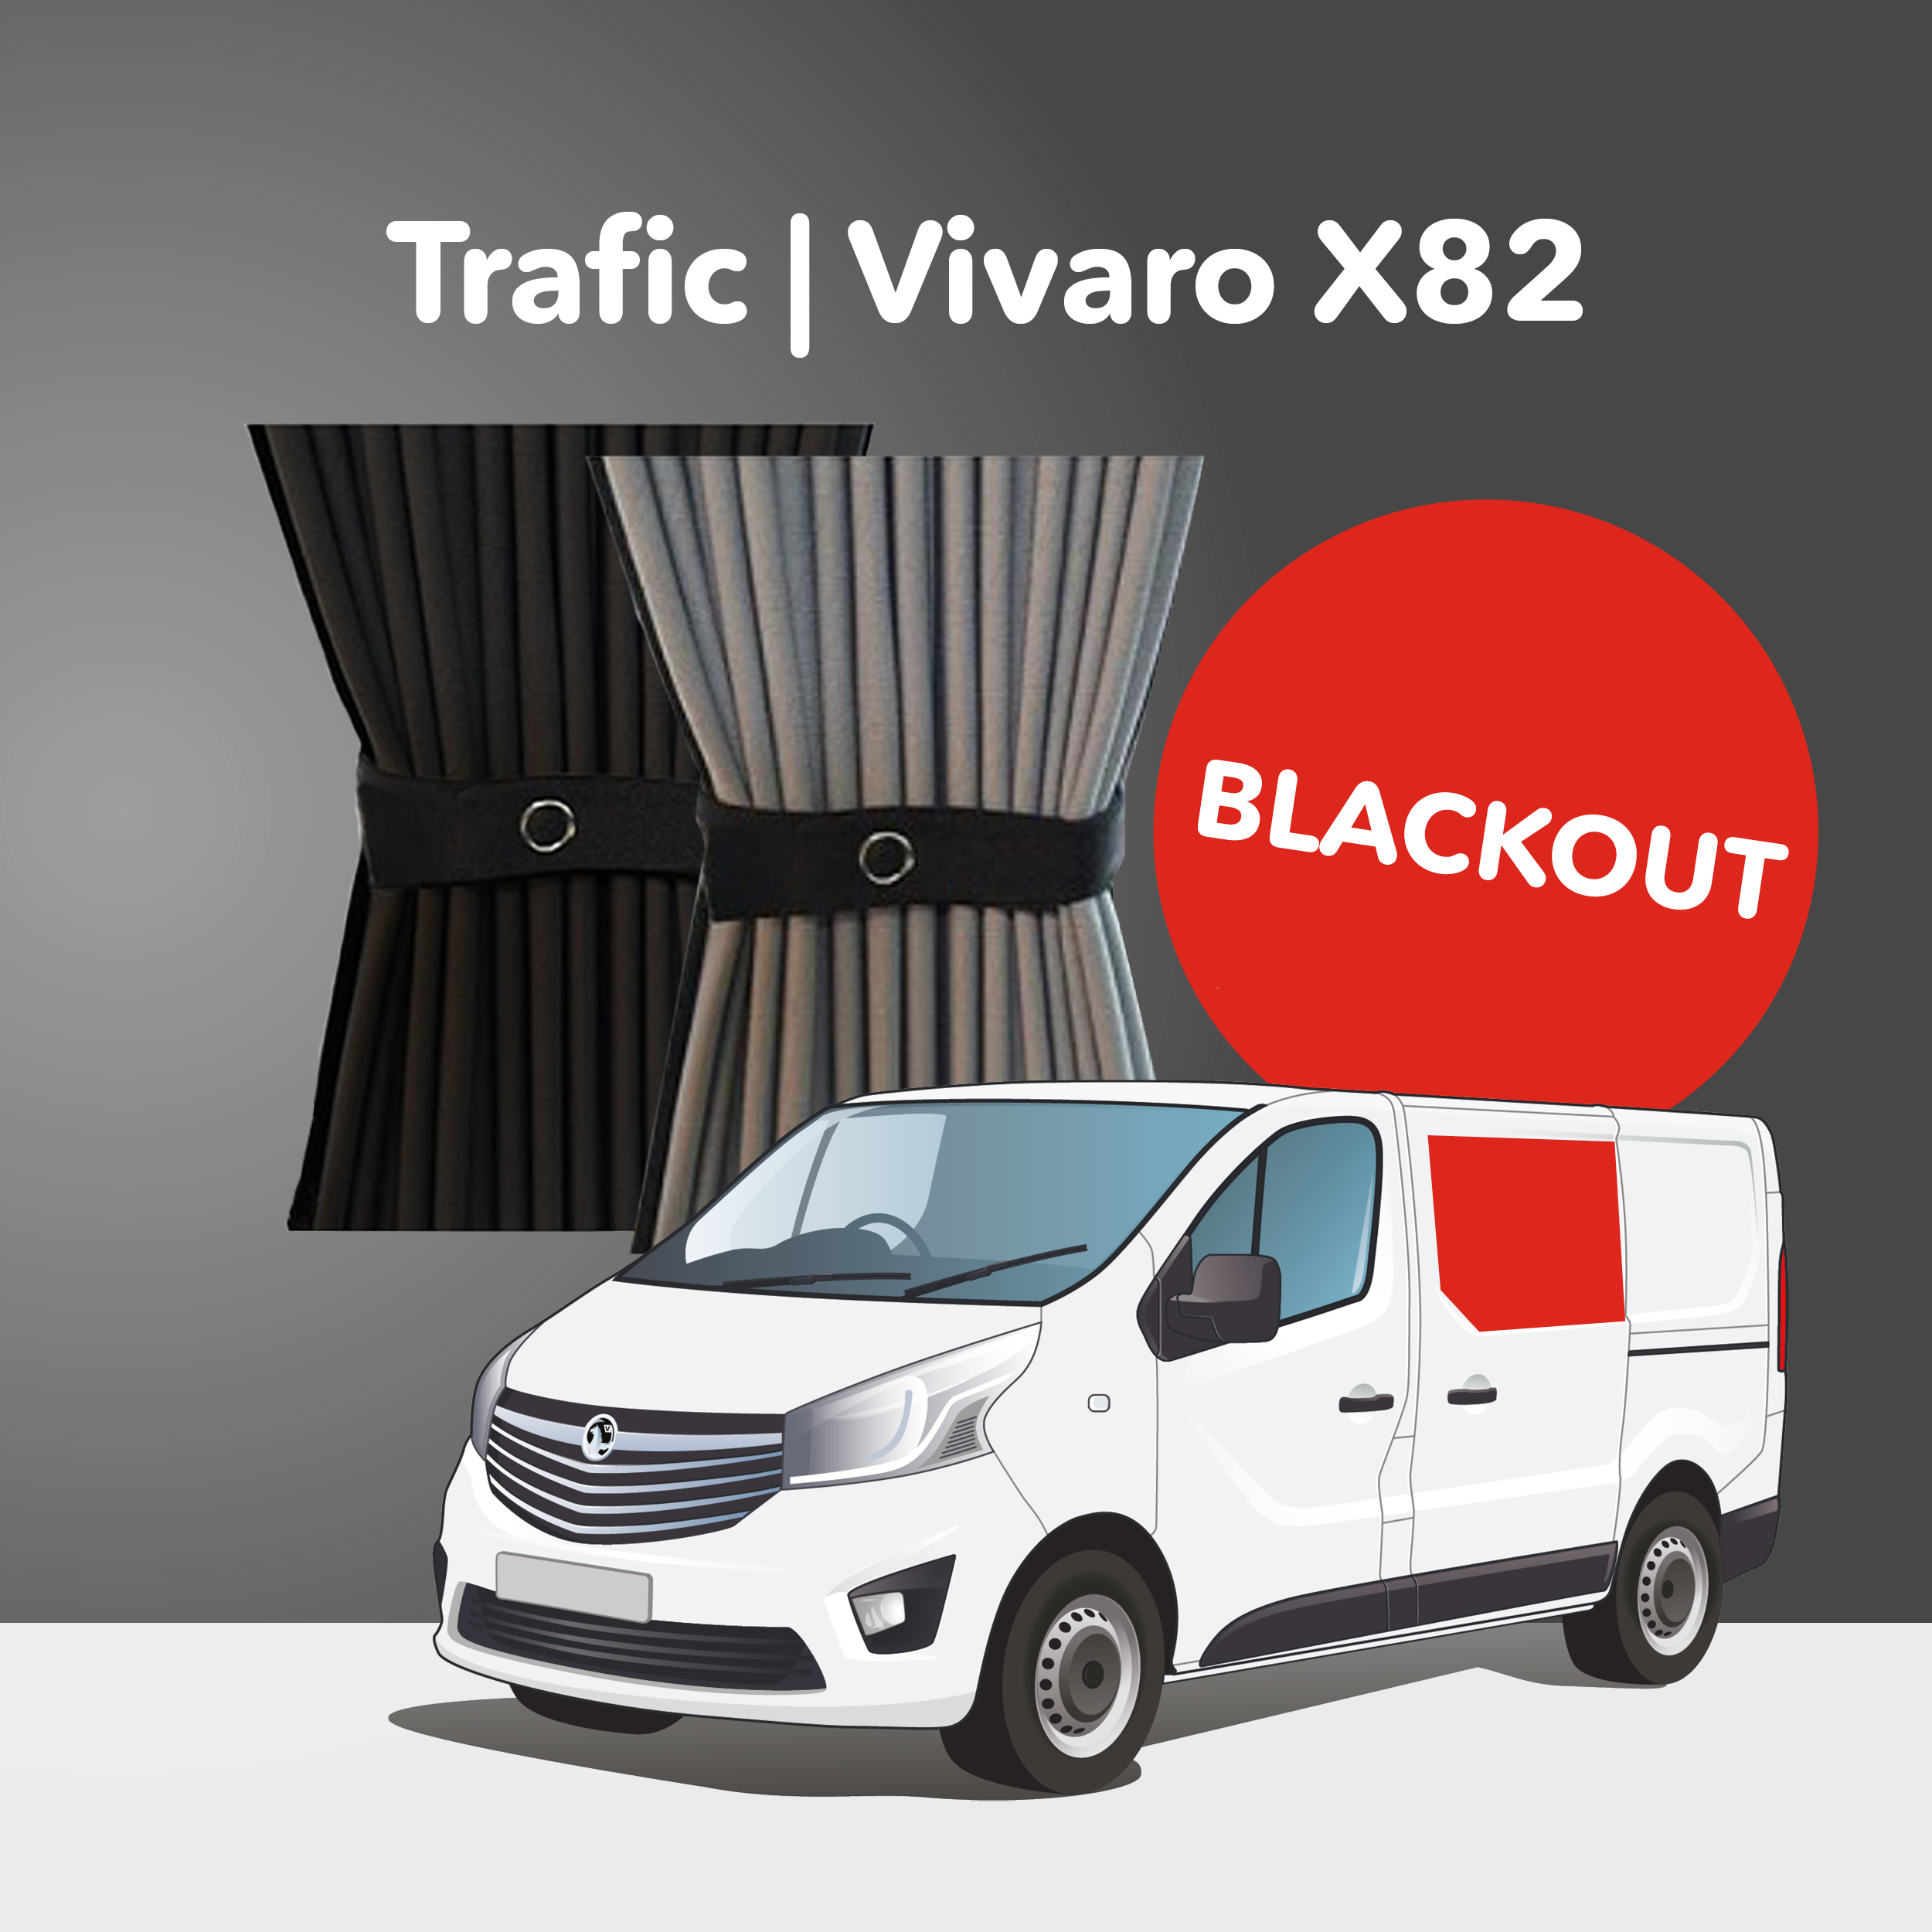 Trafic/Vivaro 2014-2018, Talento 2014+, NV300 2014+ X82 - Mitte Links - Schiebetür (Premium-Blackout)